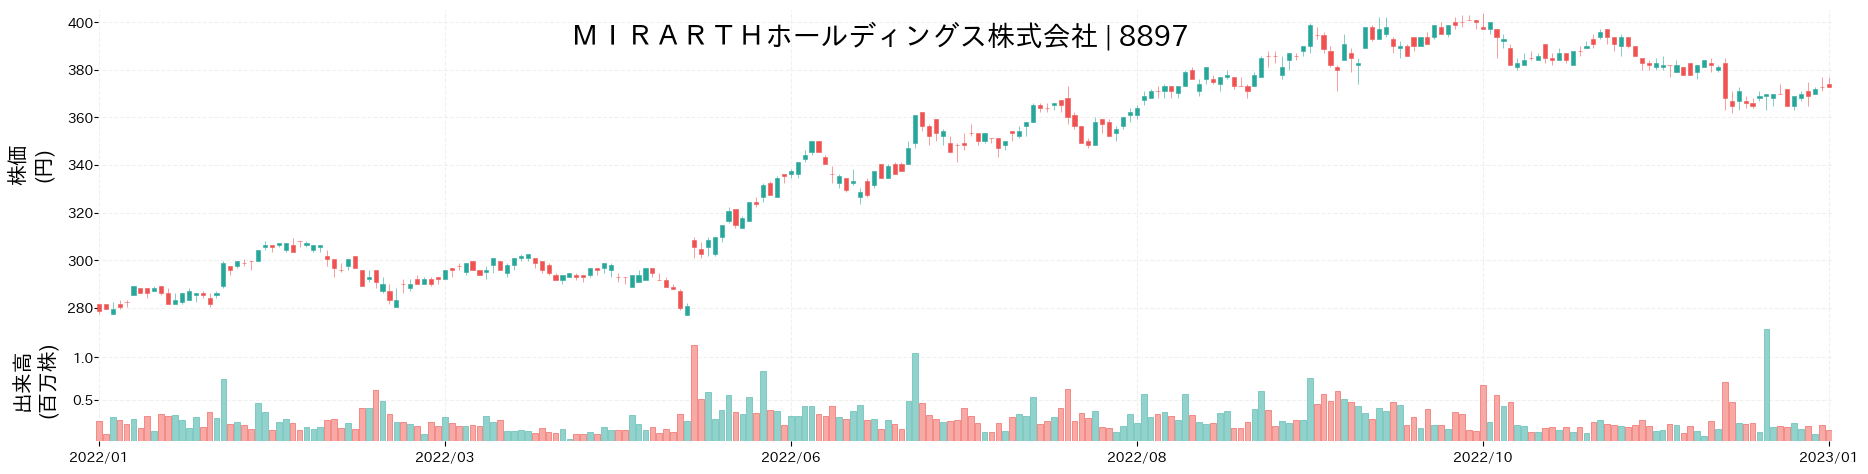 タカラレーベンの株価推移(2022)